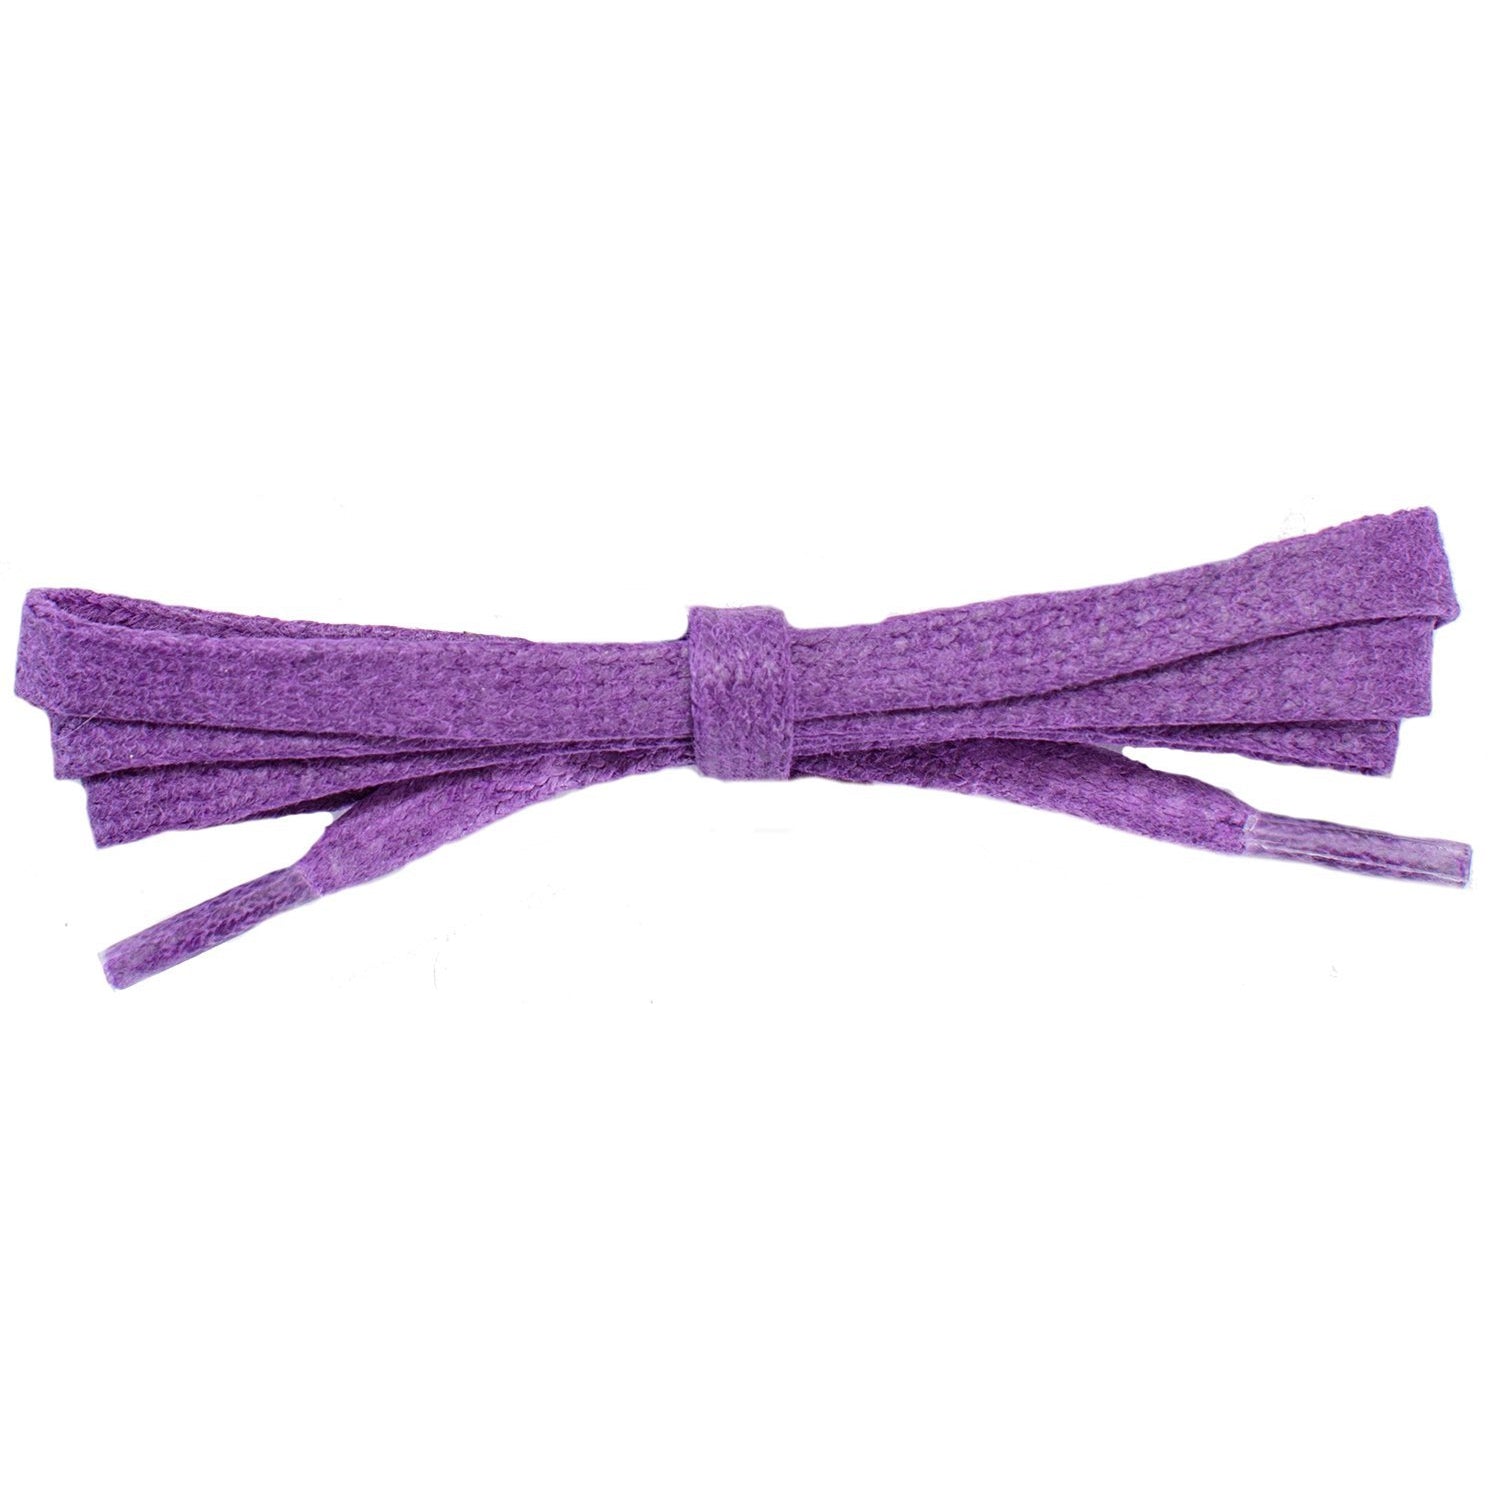 Wholesale Waxed Cotton Flat DRESS Laces 1/4'' - Pansy Purple (12 Pair Pack) Shoelaces